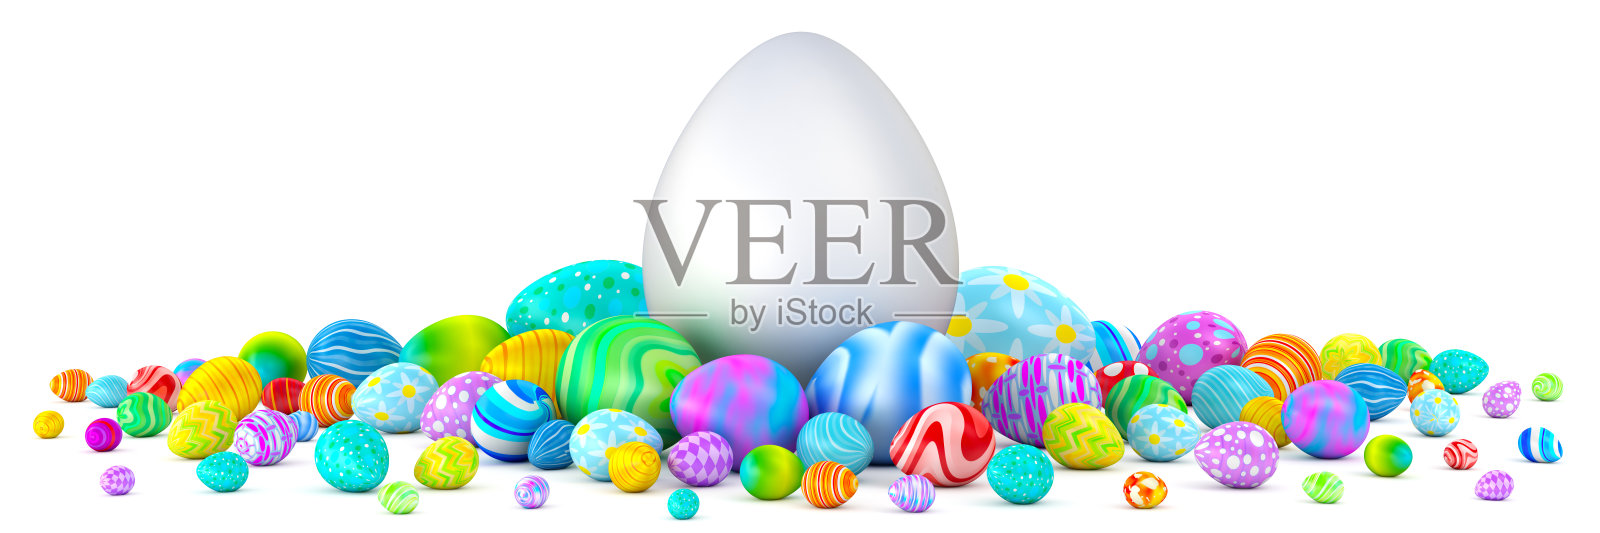 一堆彩色的复活节彩蛋围绕着一个巨大的白色蛋照片摄影图片